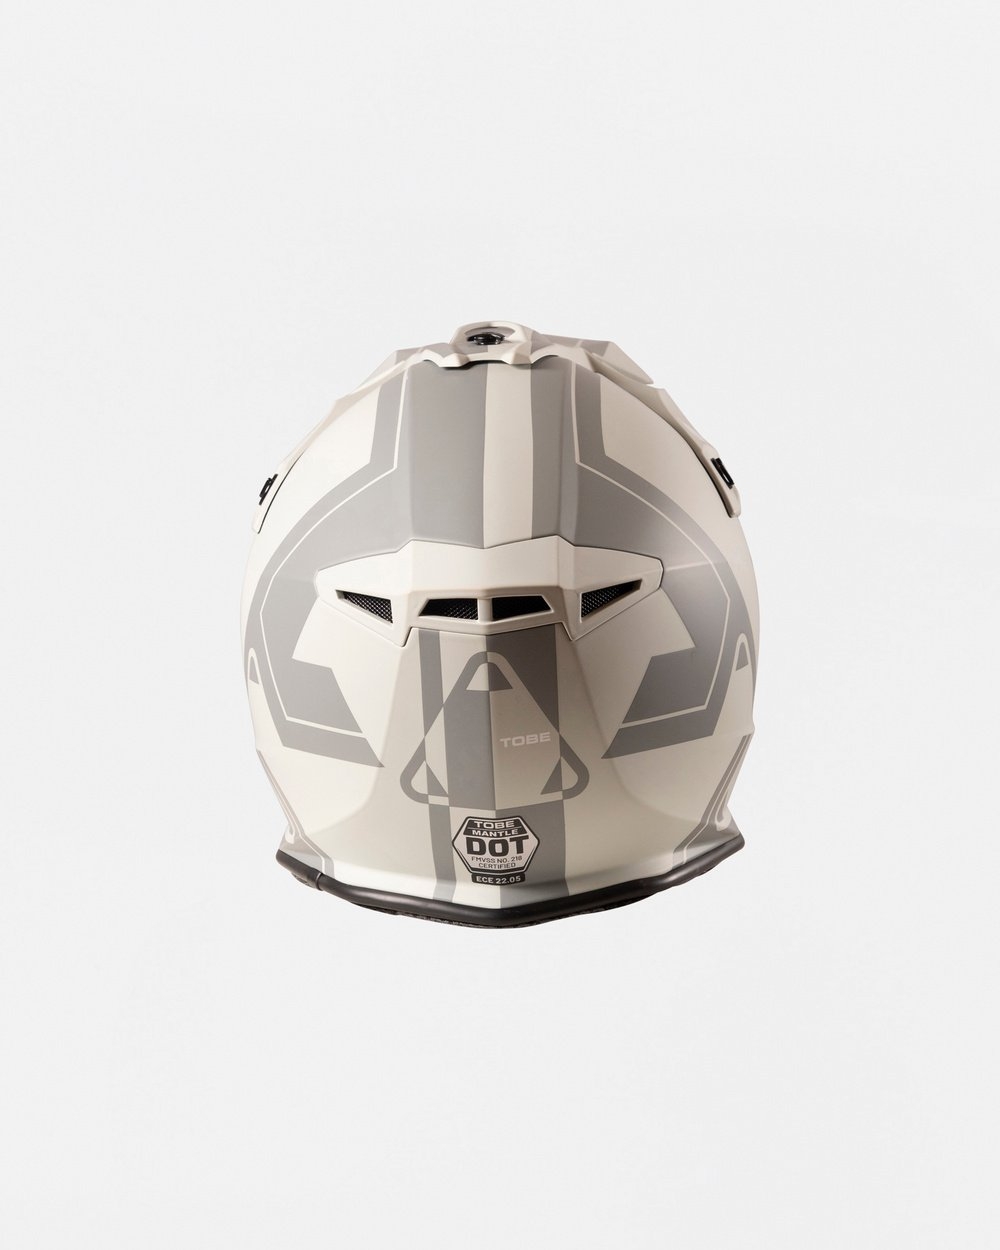 Mantle Helmet - Flow Gray